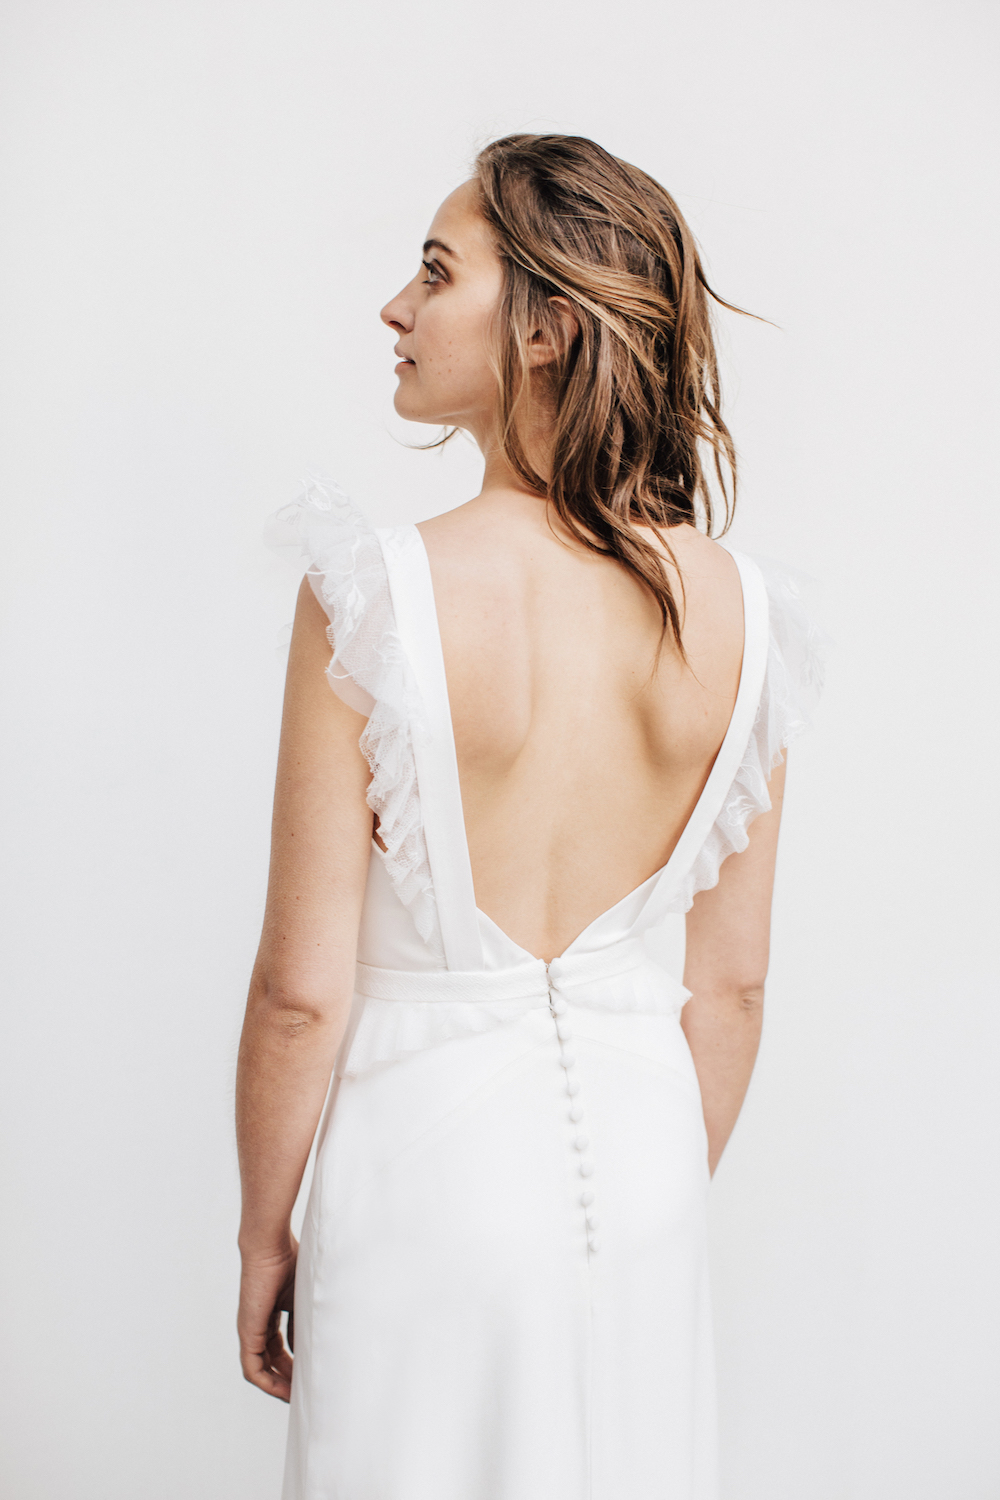 Céline de Monicault collection 2017 - Robes de mariée - Blog Mariage Madame C